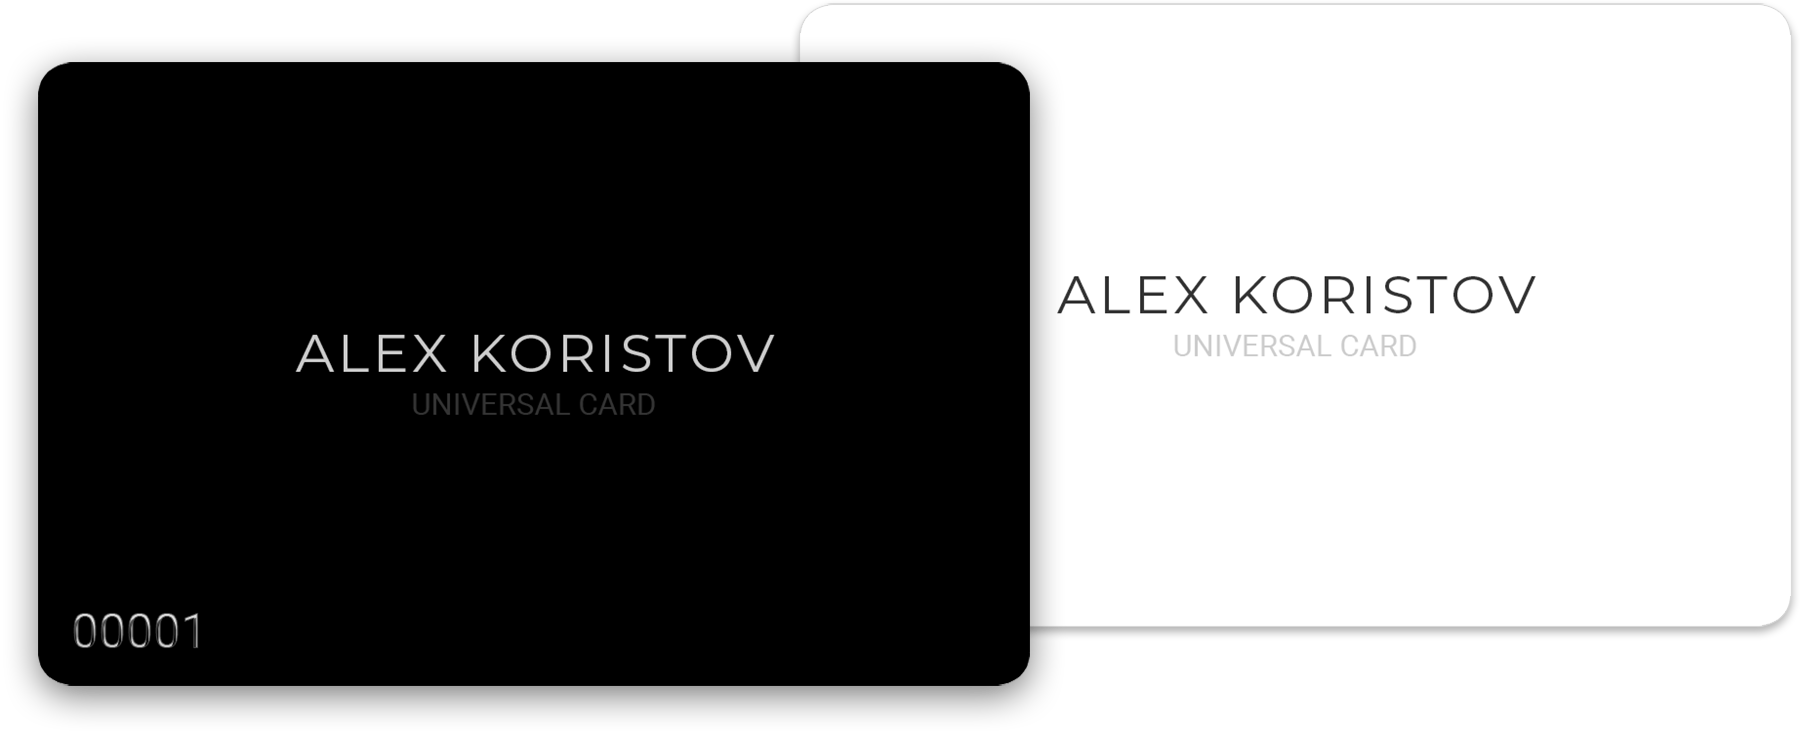 Alex Koristov Universal Card